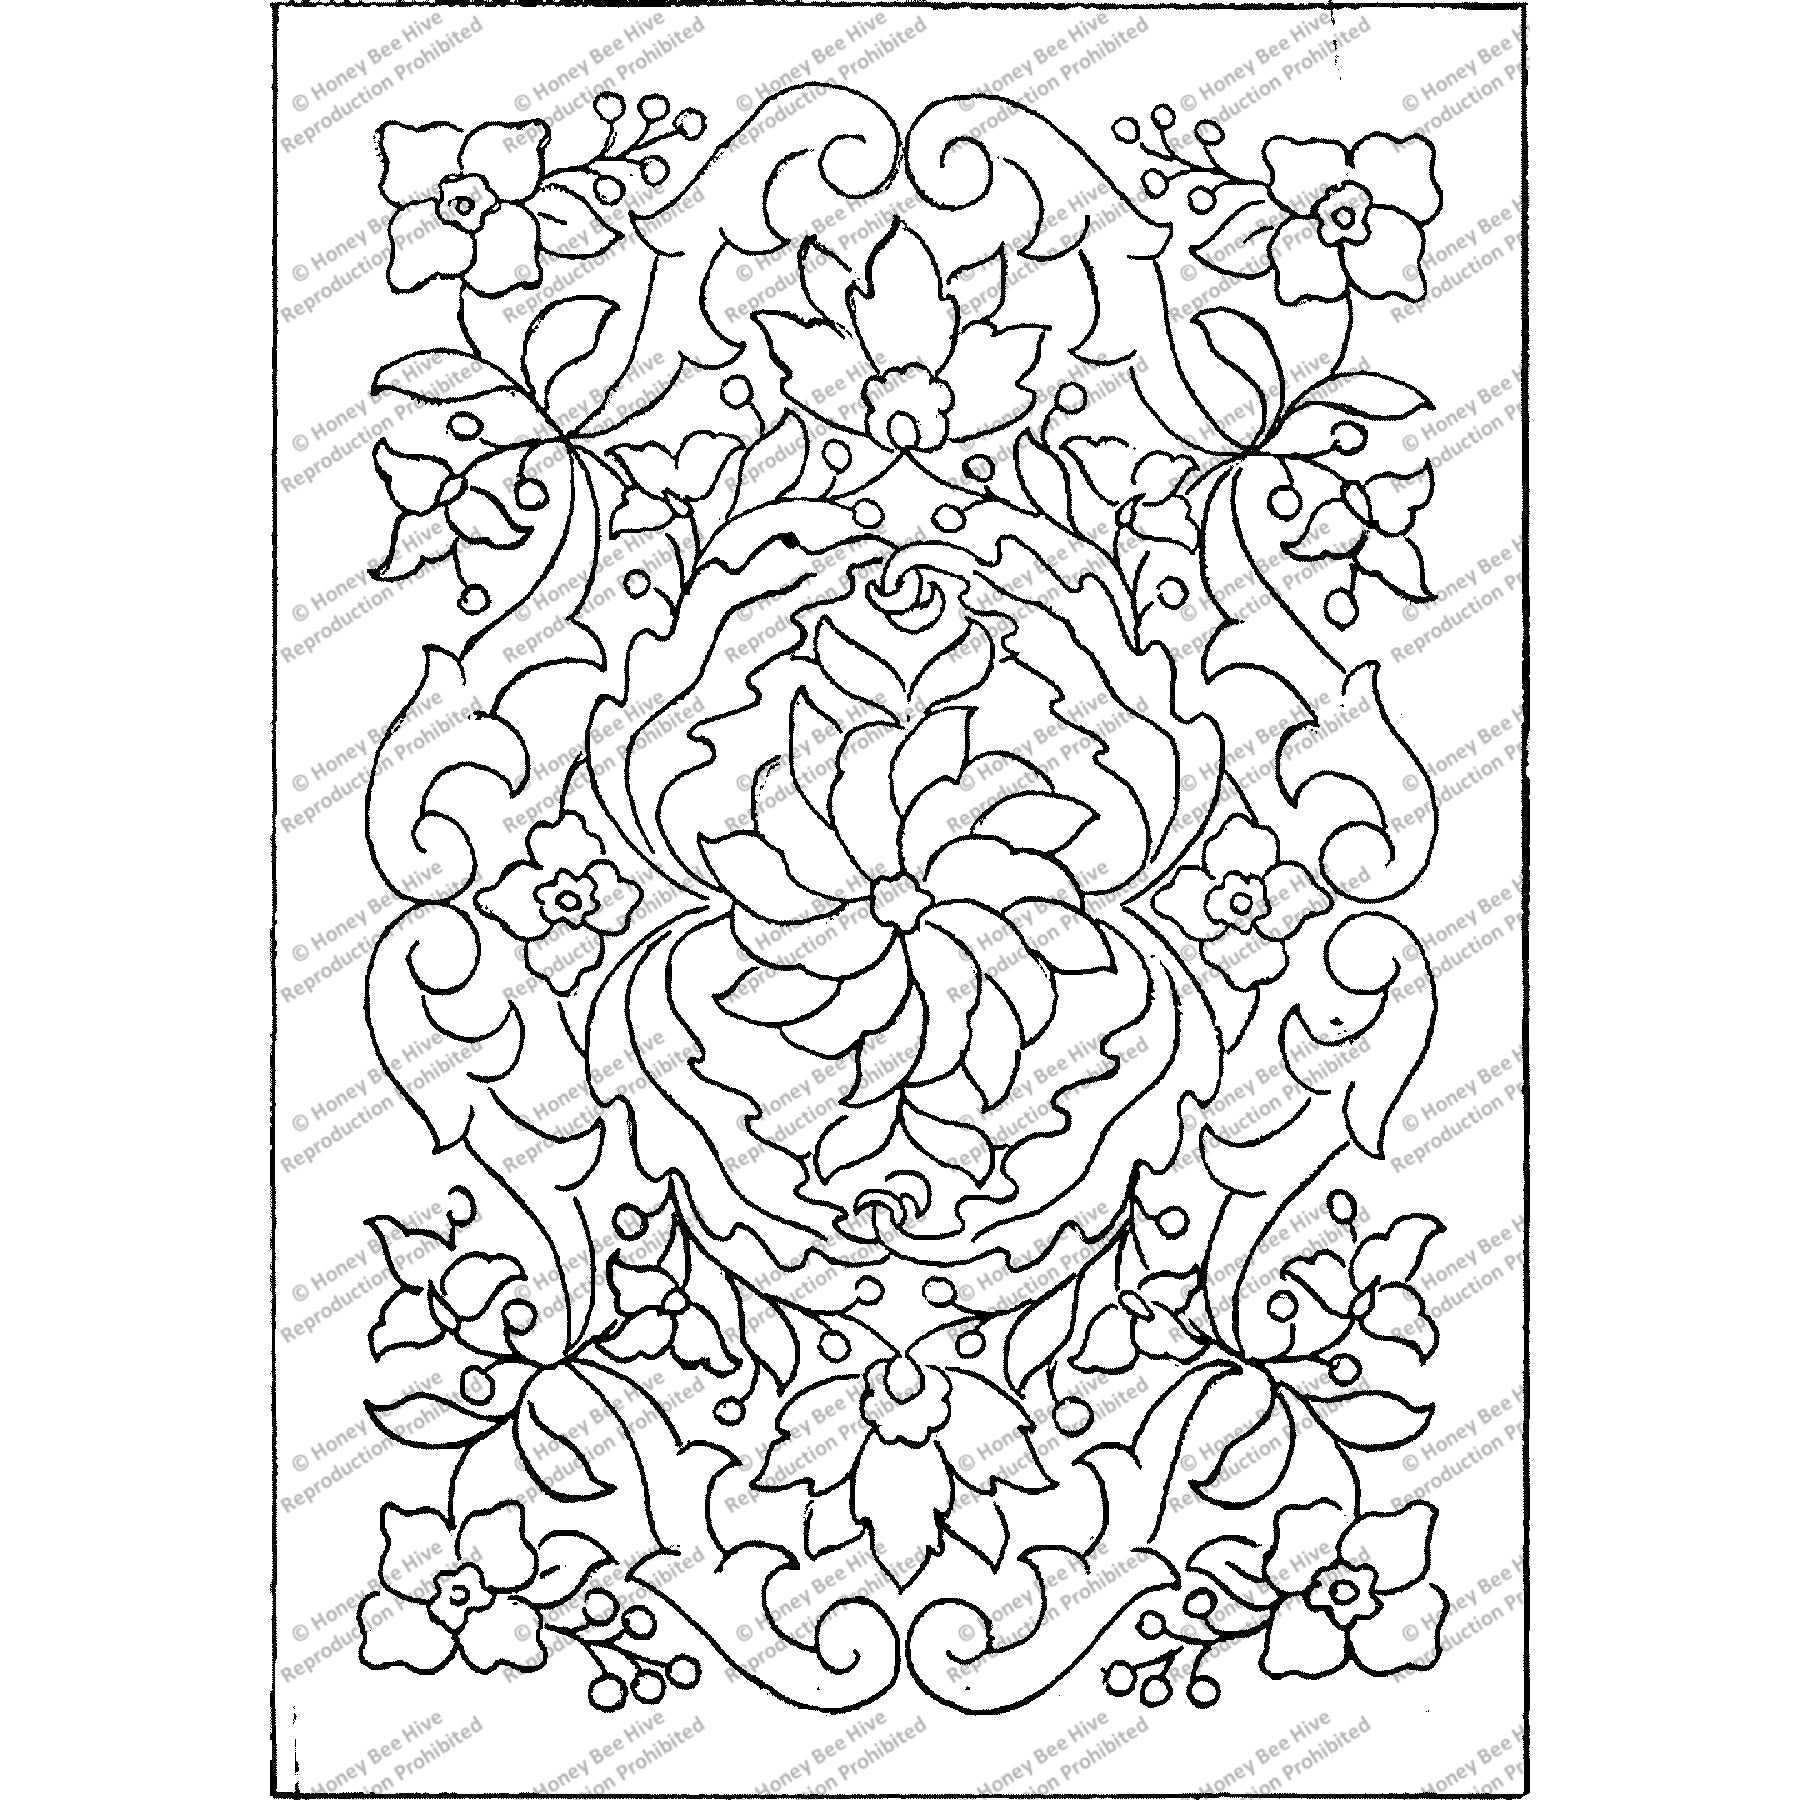 Gem Of Persia, rug hooking pattern